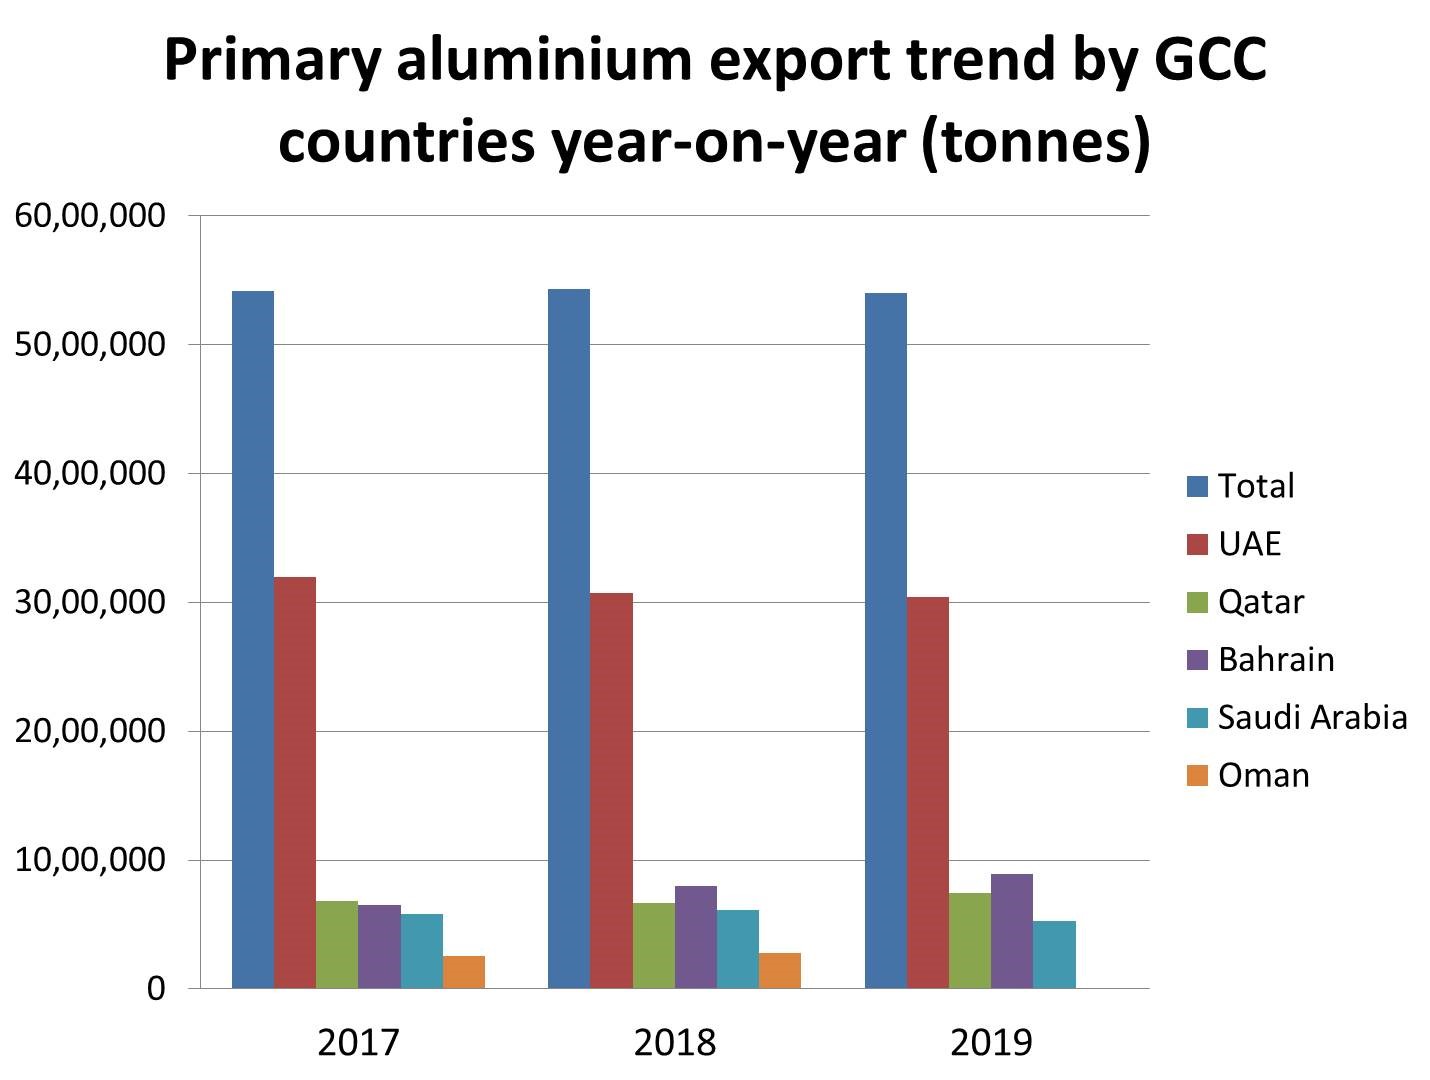 GCC countries aluminium exports